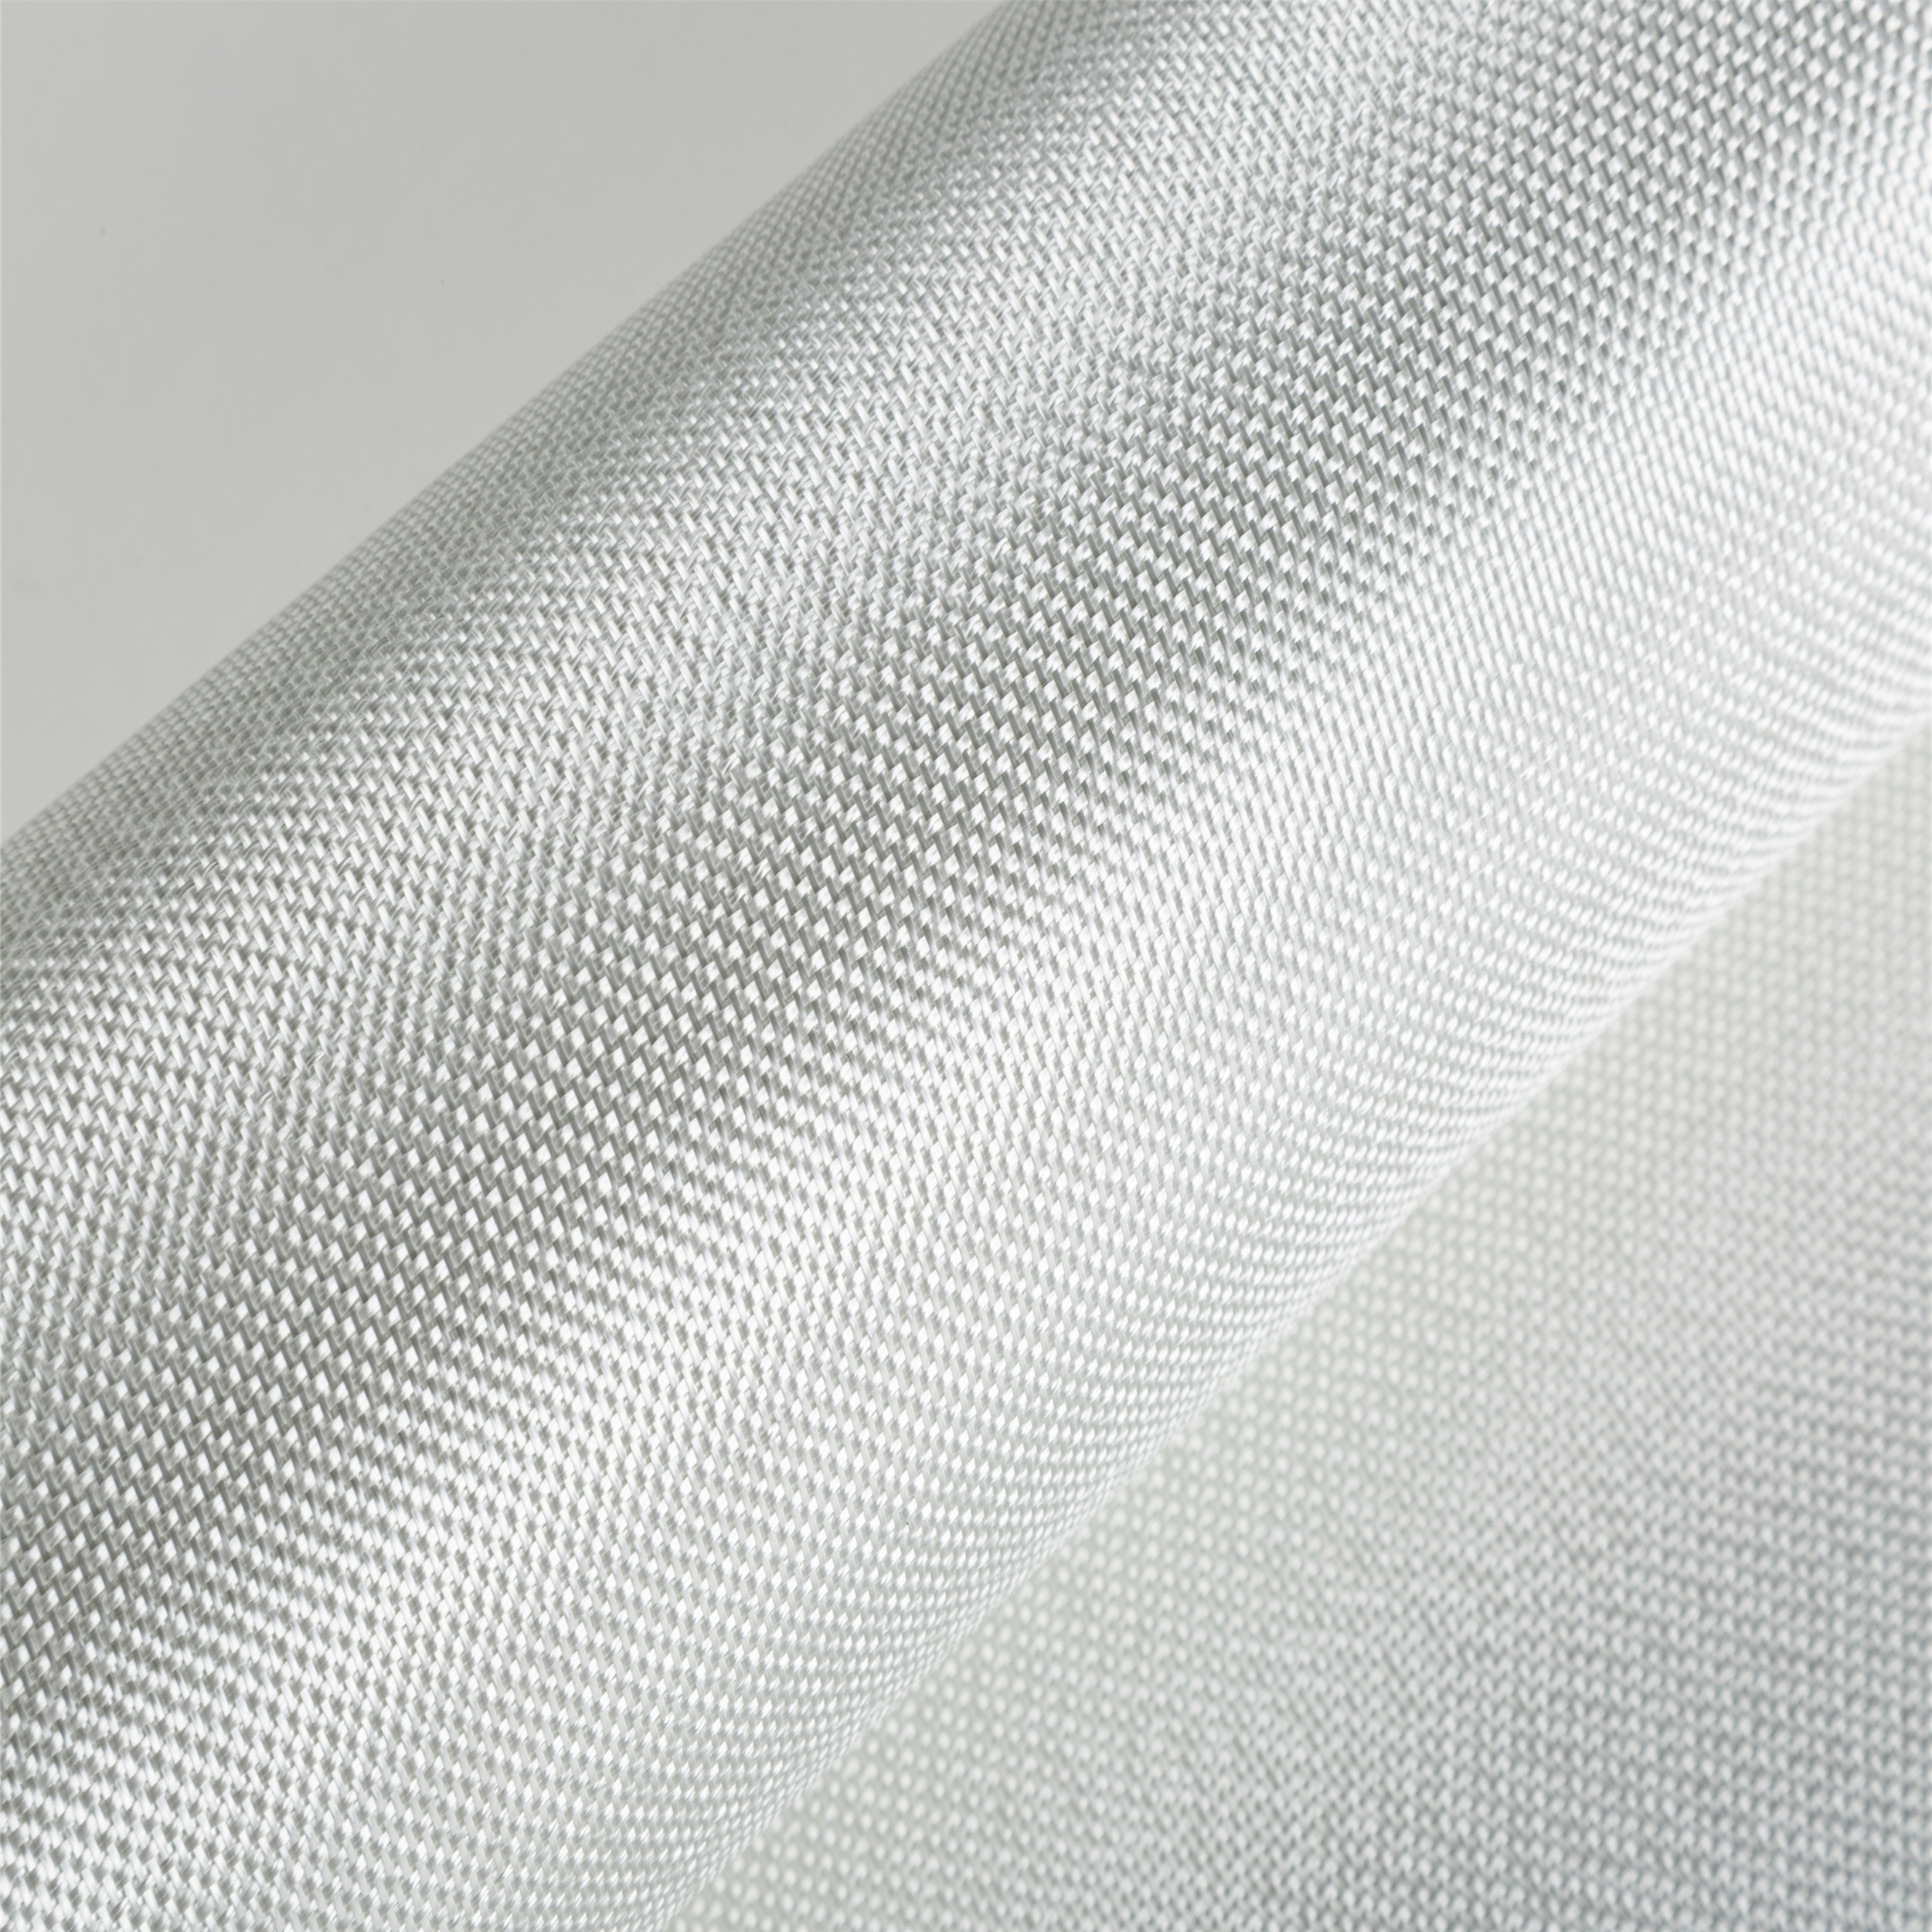 E-glass 4oz Fiberglass Cloth Plain Weave 135g per square meter boat fiberglass high temperature